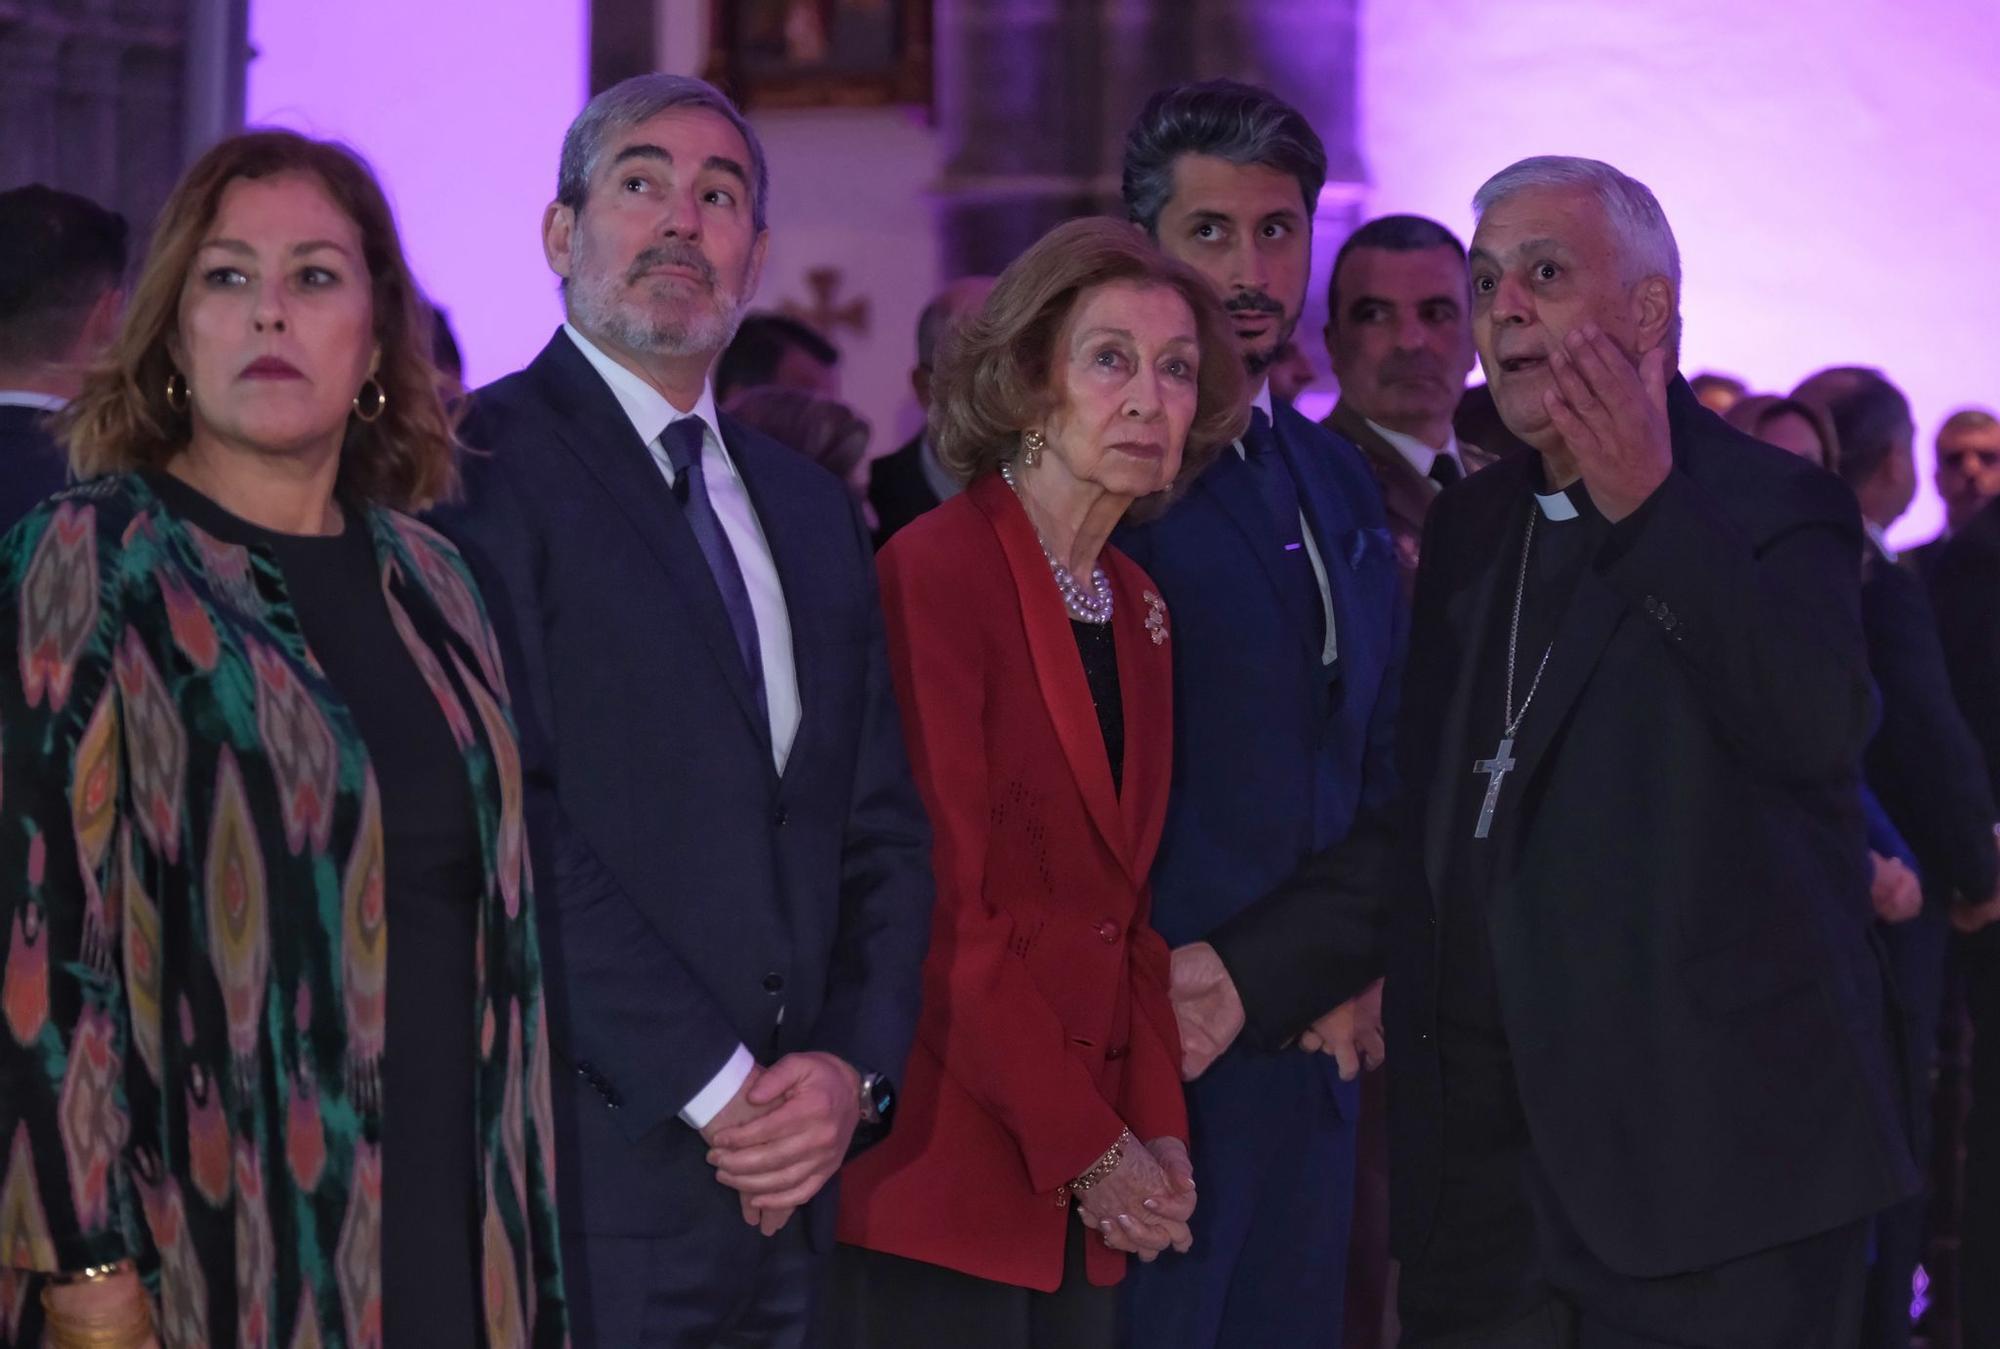 La reina emérita Doña Sofía asiste al concierto del 30 aniversario del Grupo de Ciudades Patrimonio de la Humanidad